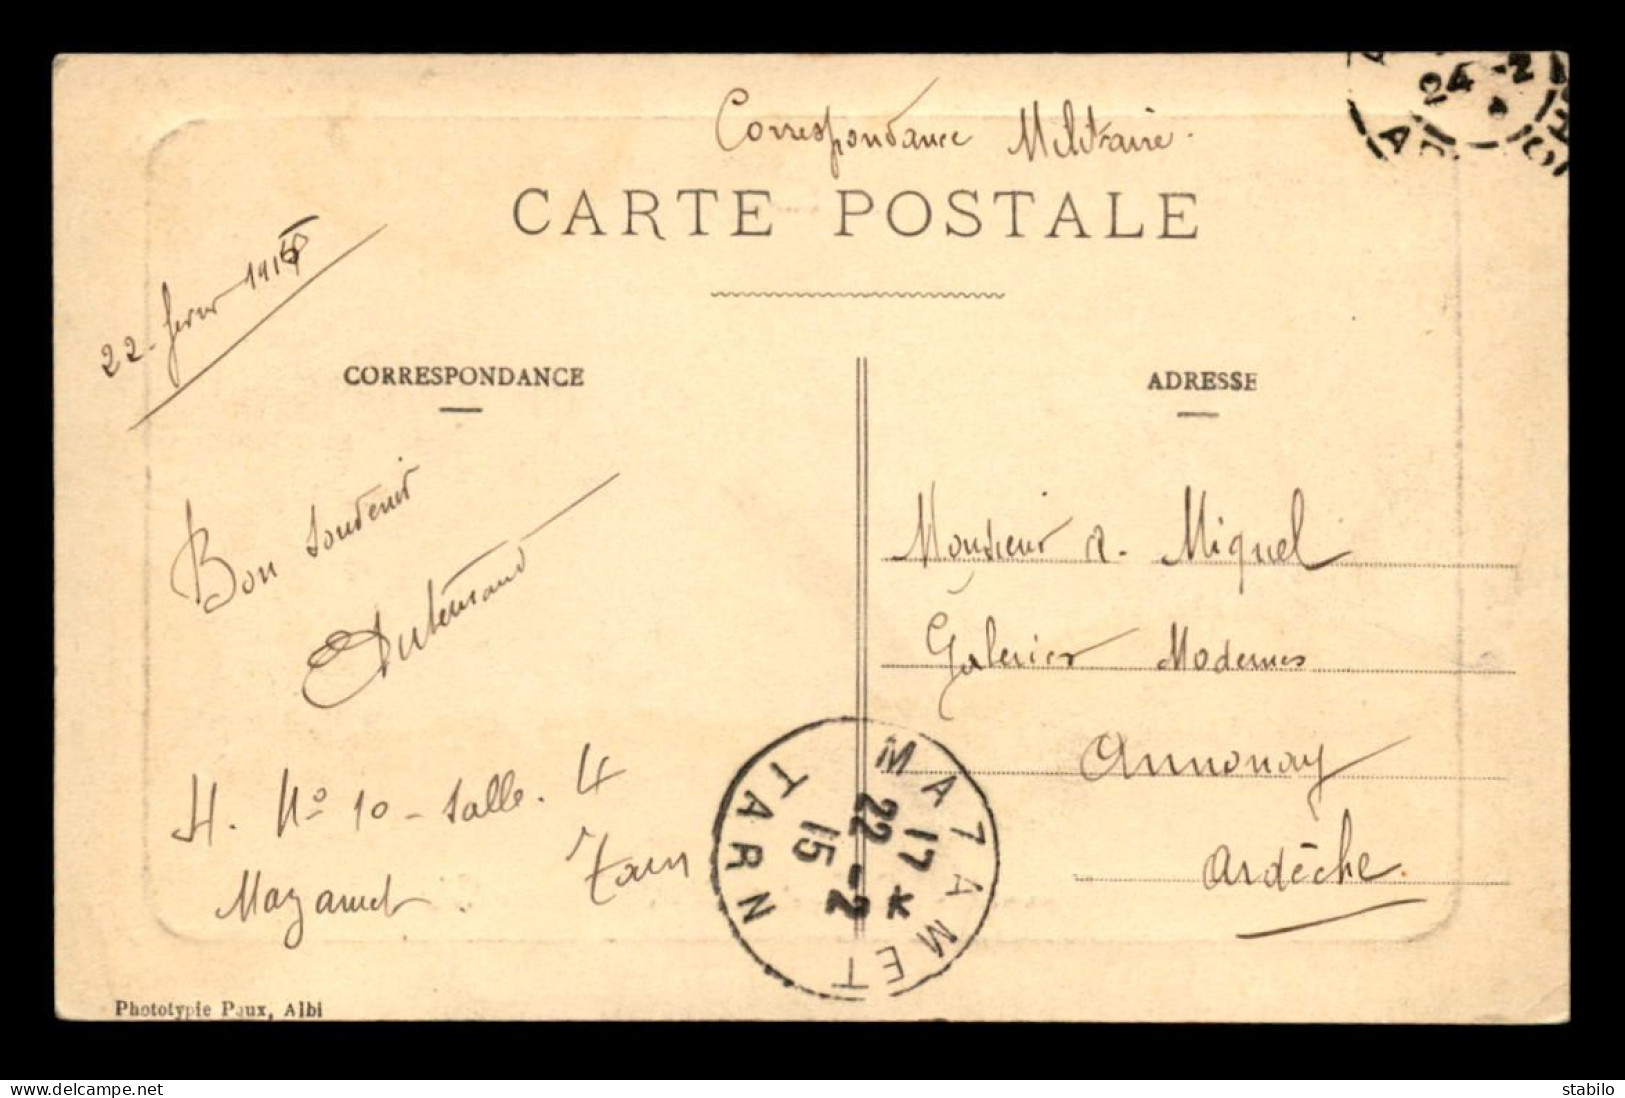 CACHET HOPITAL AUXILIAIRE DU TERRITOIRE, CROIX-ROUGE FRANCAISE - XVIE CORPS N°10 - MAZAMET (TARN) - Guerre De 1914-18